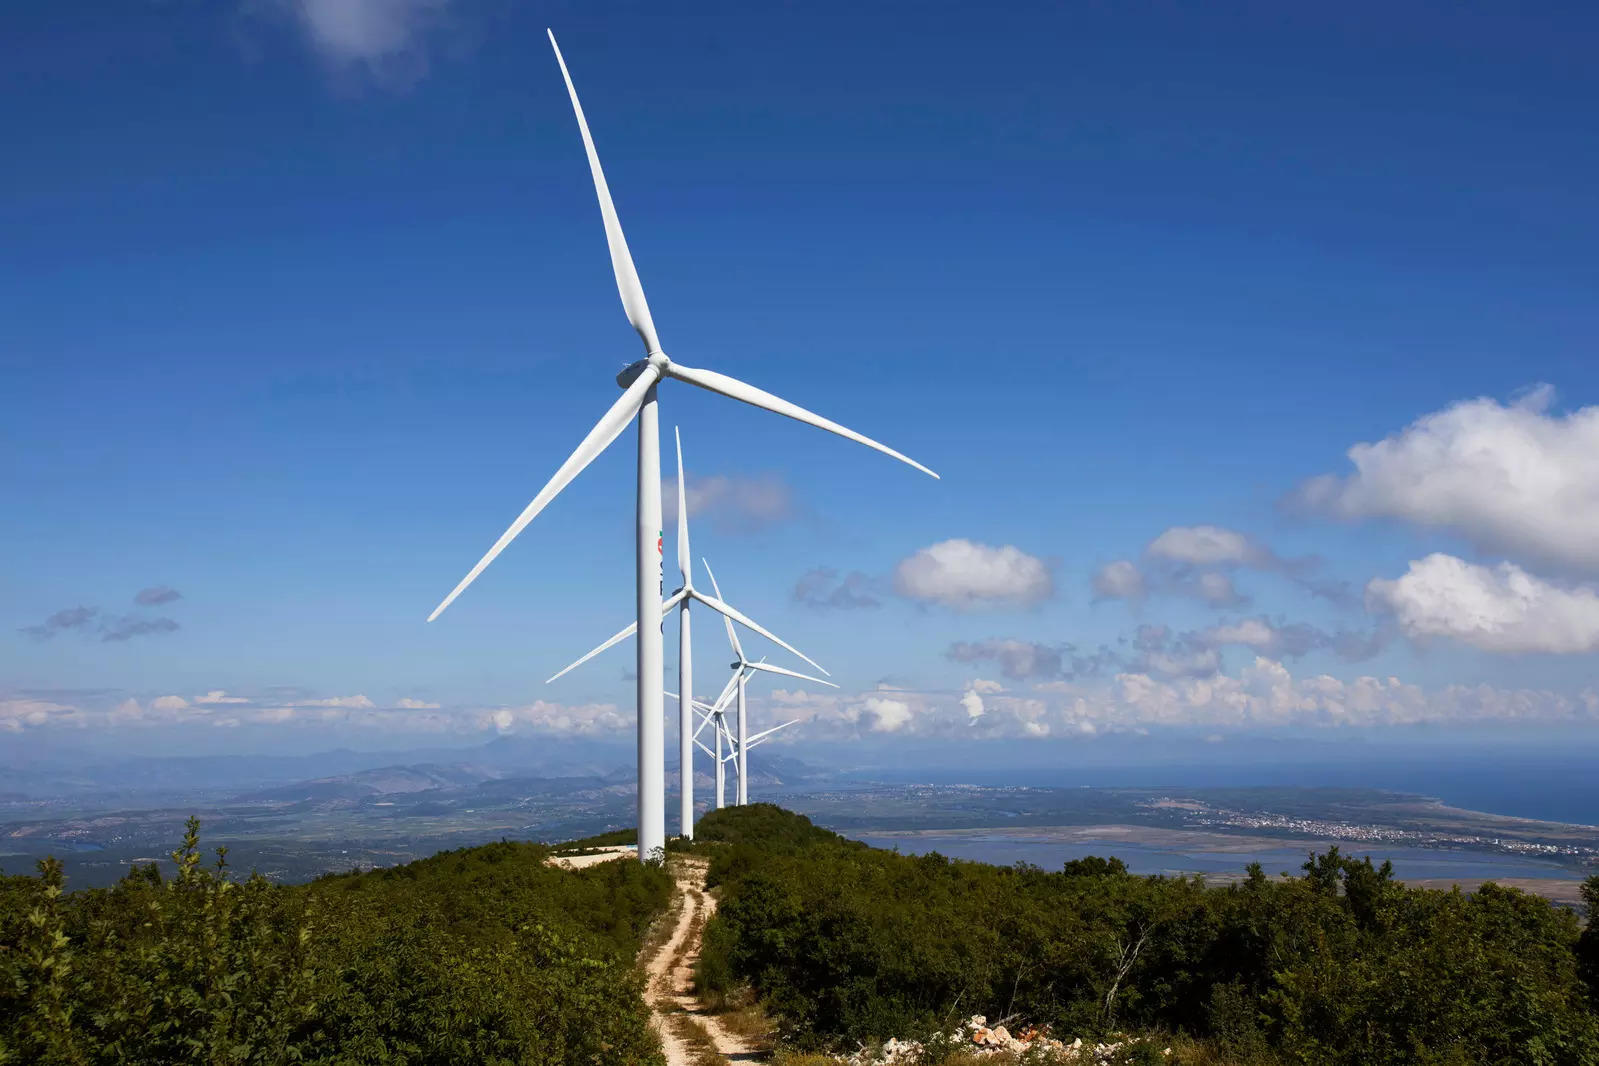 Inox Wind commissions India’s first 3.3MW wind turbine in Jasdan